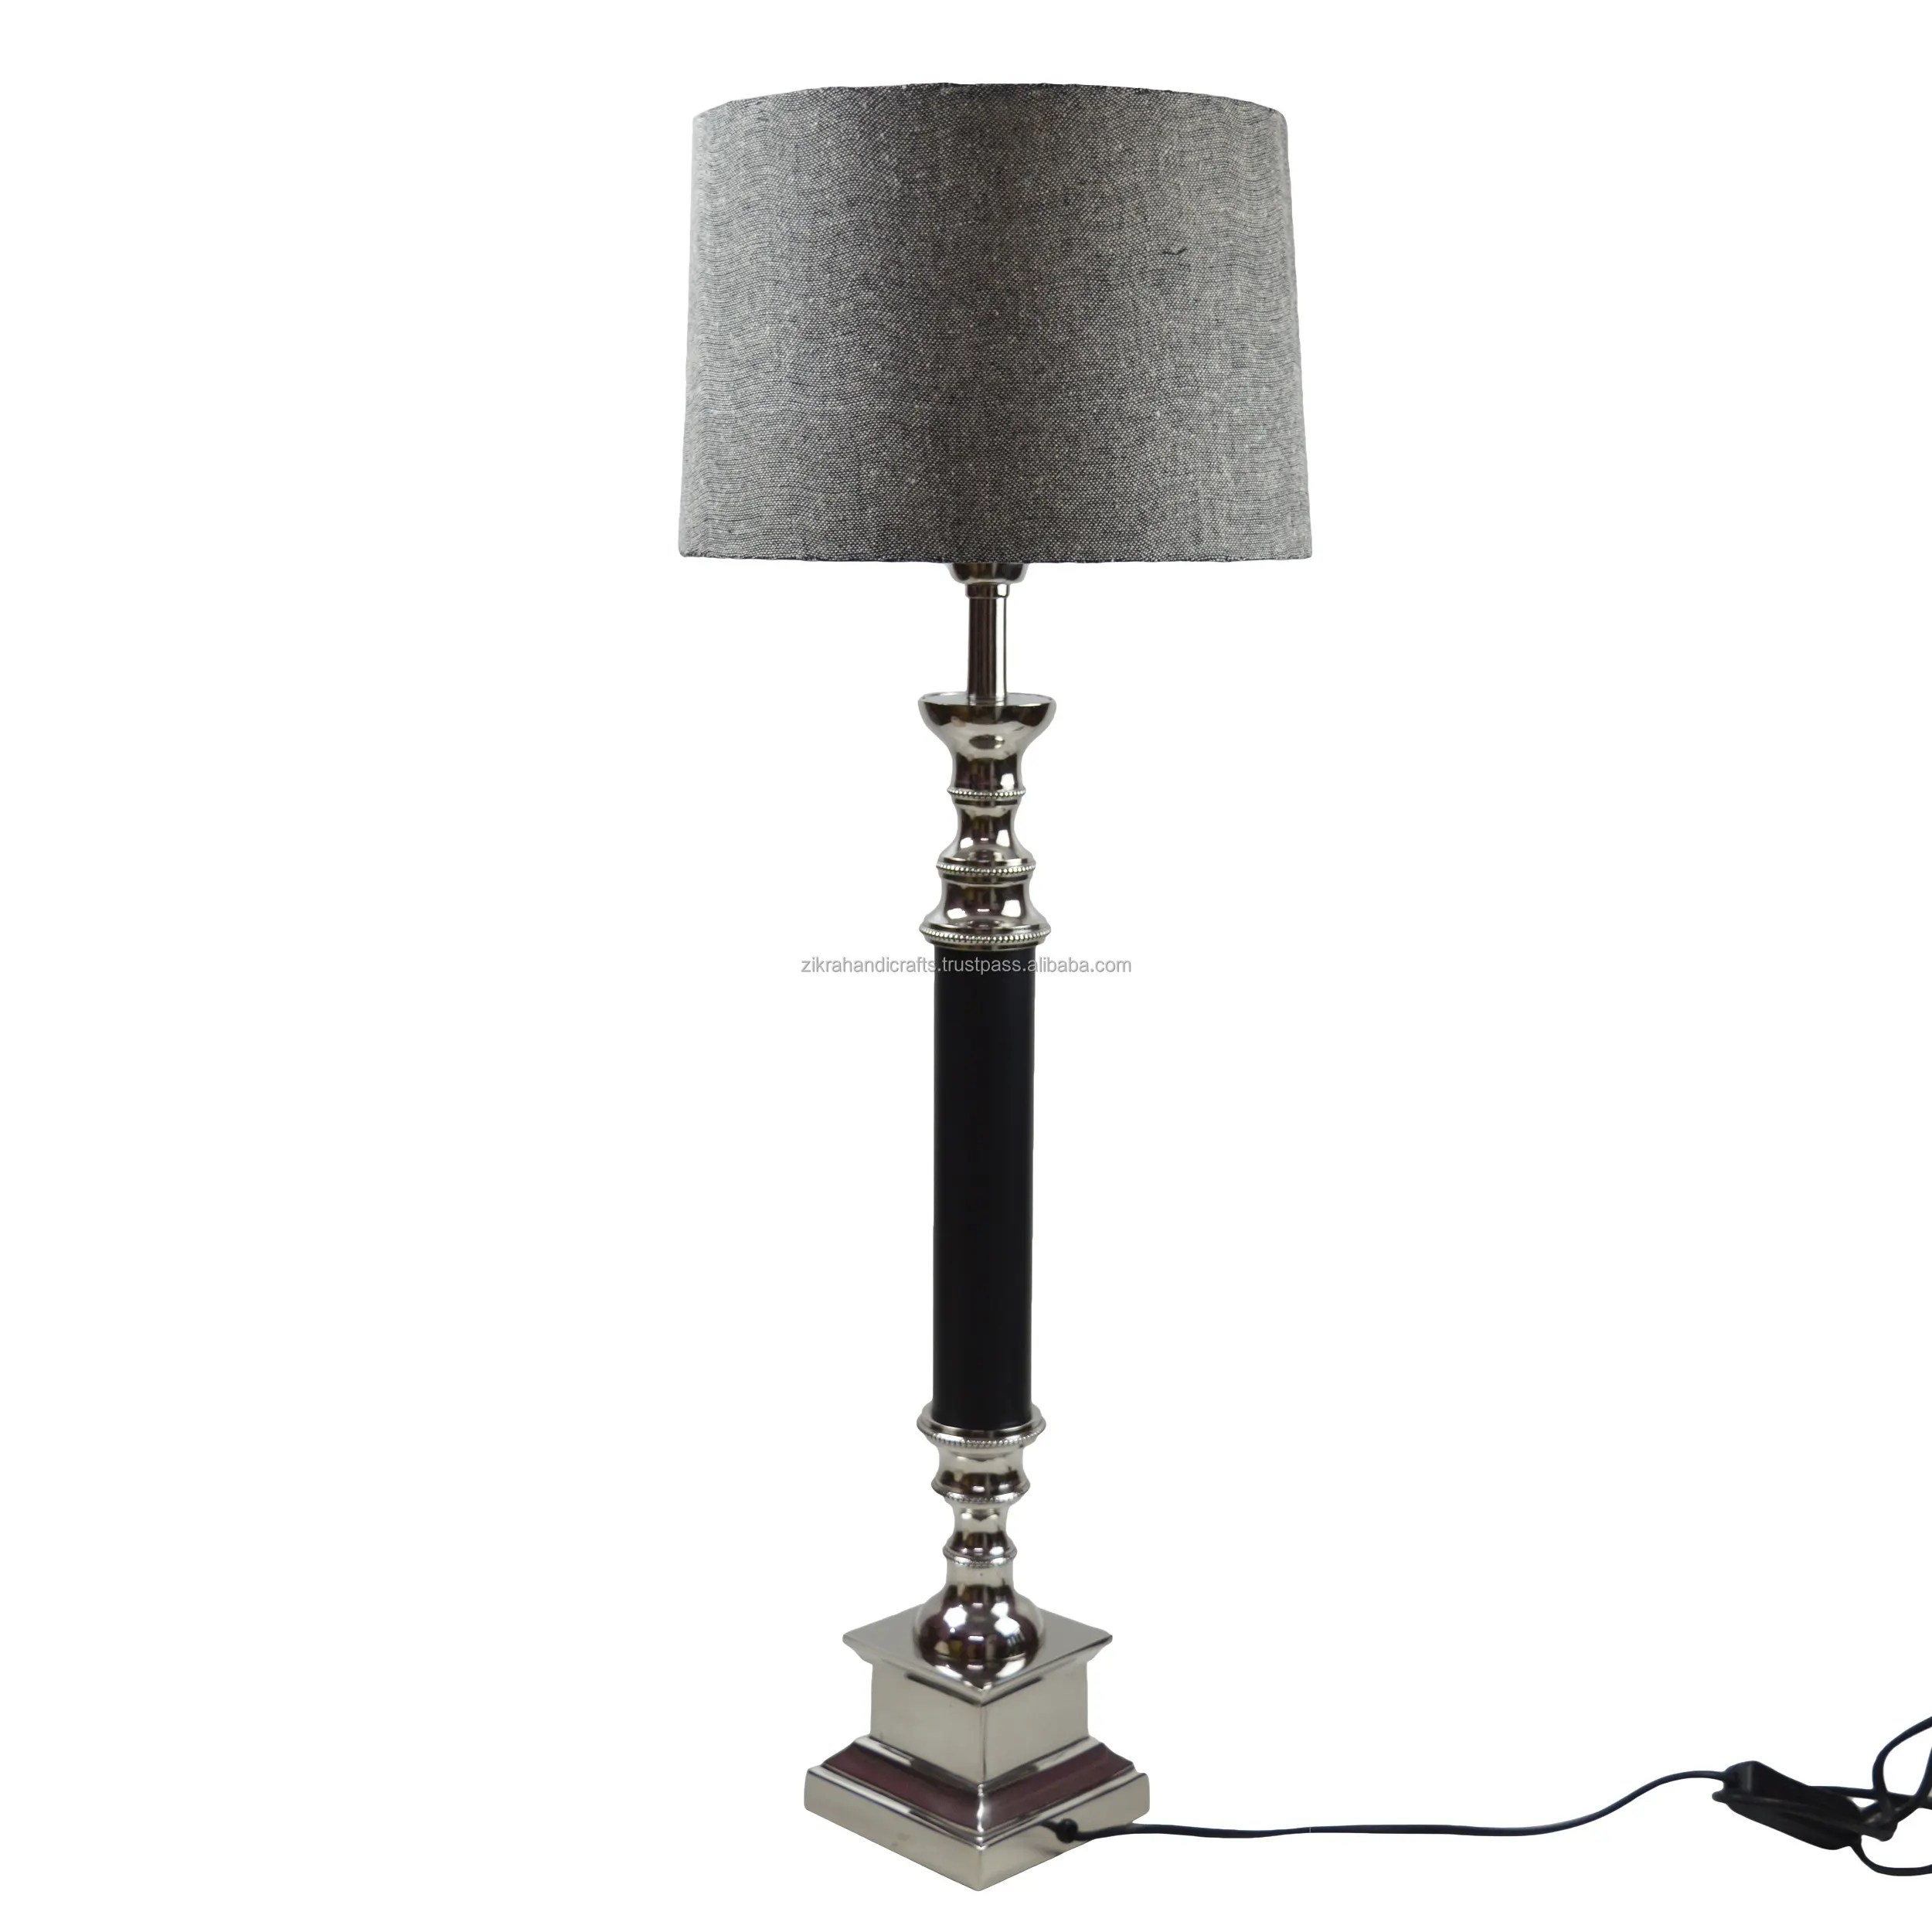 로얄 테이블 램프 럭셔리 마무리 최신 디자인 장식 금속 램프 바닥 및 홈 장식 저렴한 골동품 램프